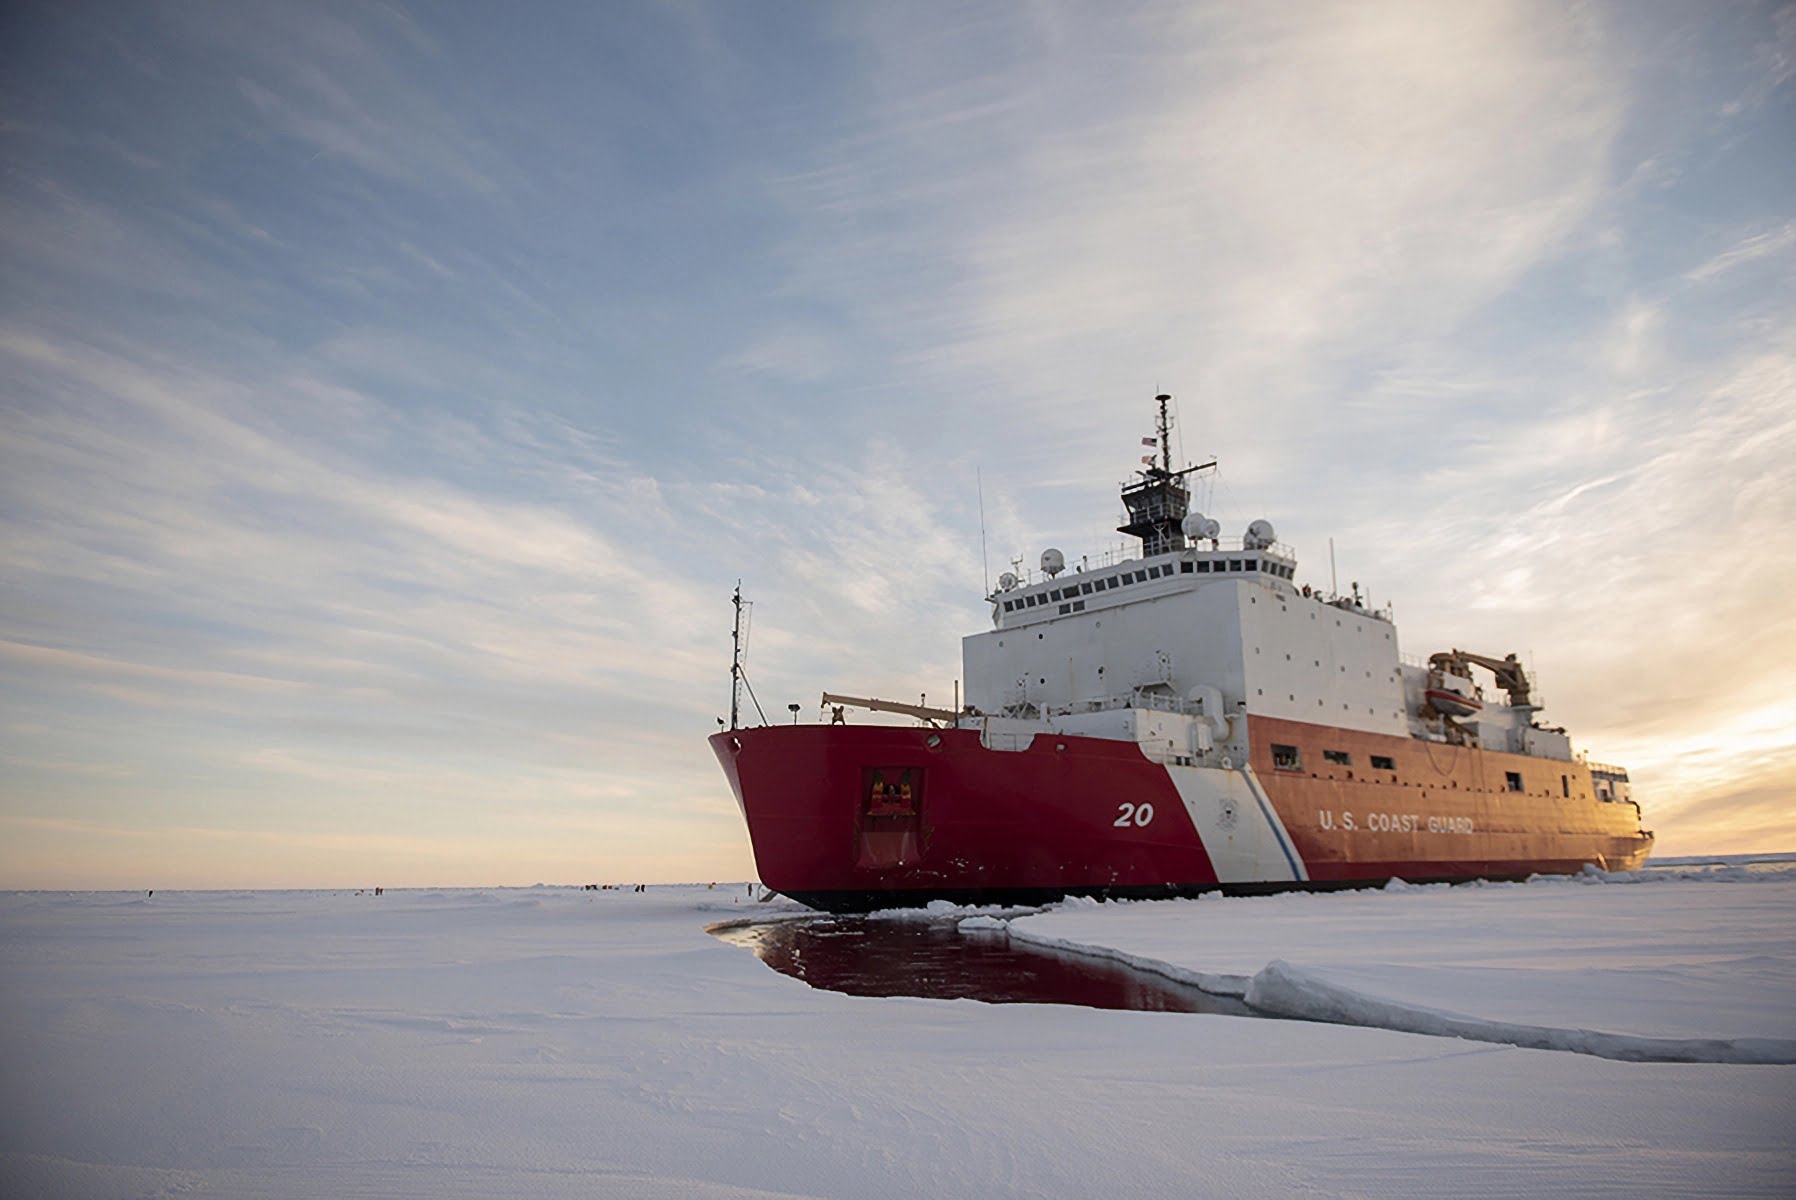 Neuer arktischer Datensatz soll KI-Forschung zum Klimawandel beschleunigen